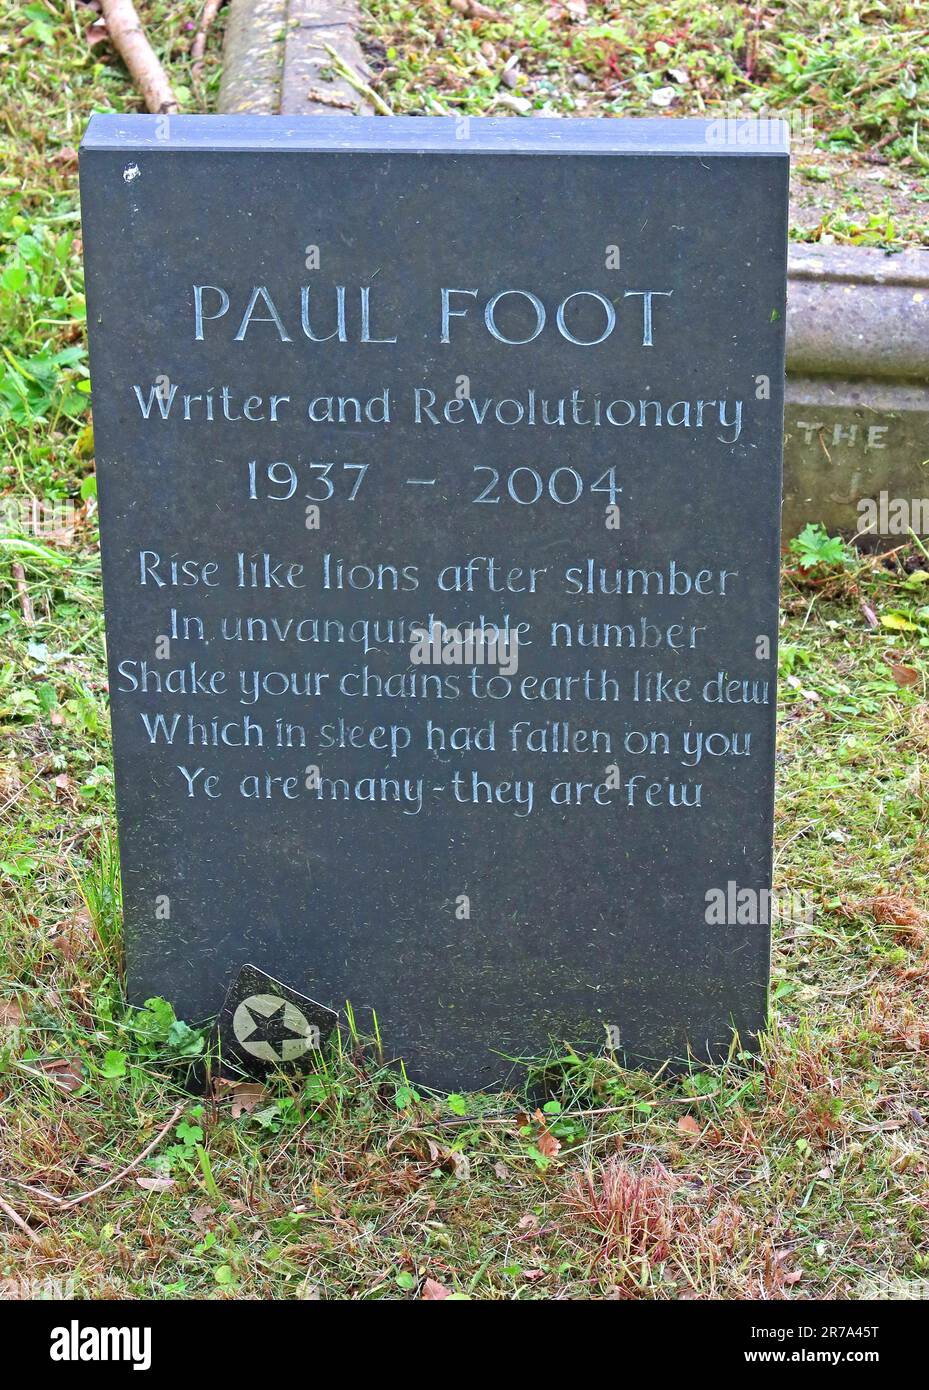 Tombe de Paul foot, écrivain et révolutionnaire, 1937-2004, enterrée dans le cimetière de Highgate, Londres, près du tombeau de Karl Marx, Swain's Lane, N6 6PJ Banque D'Images